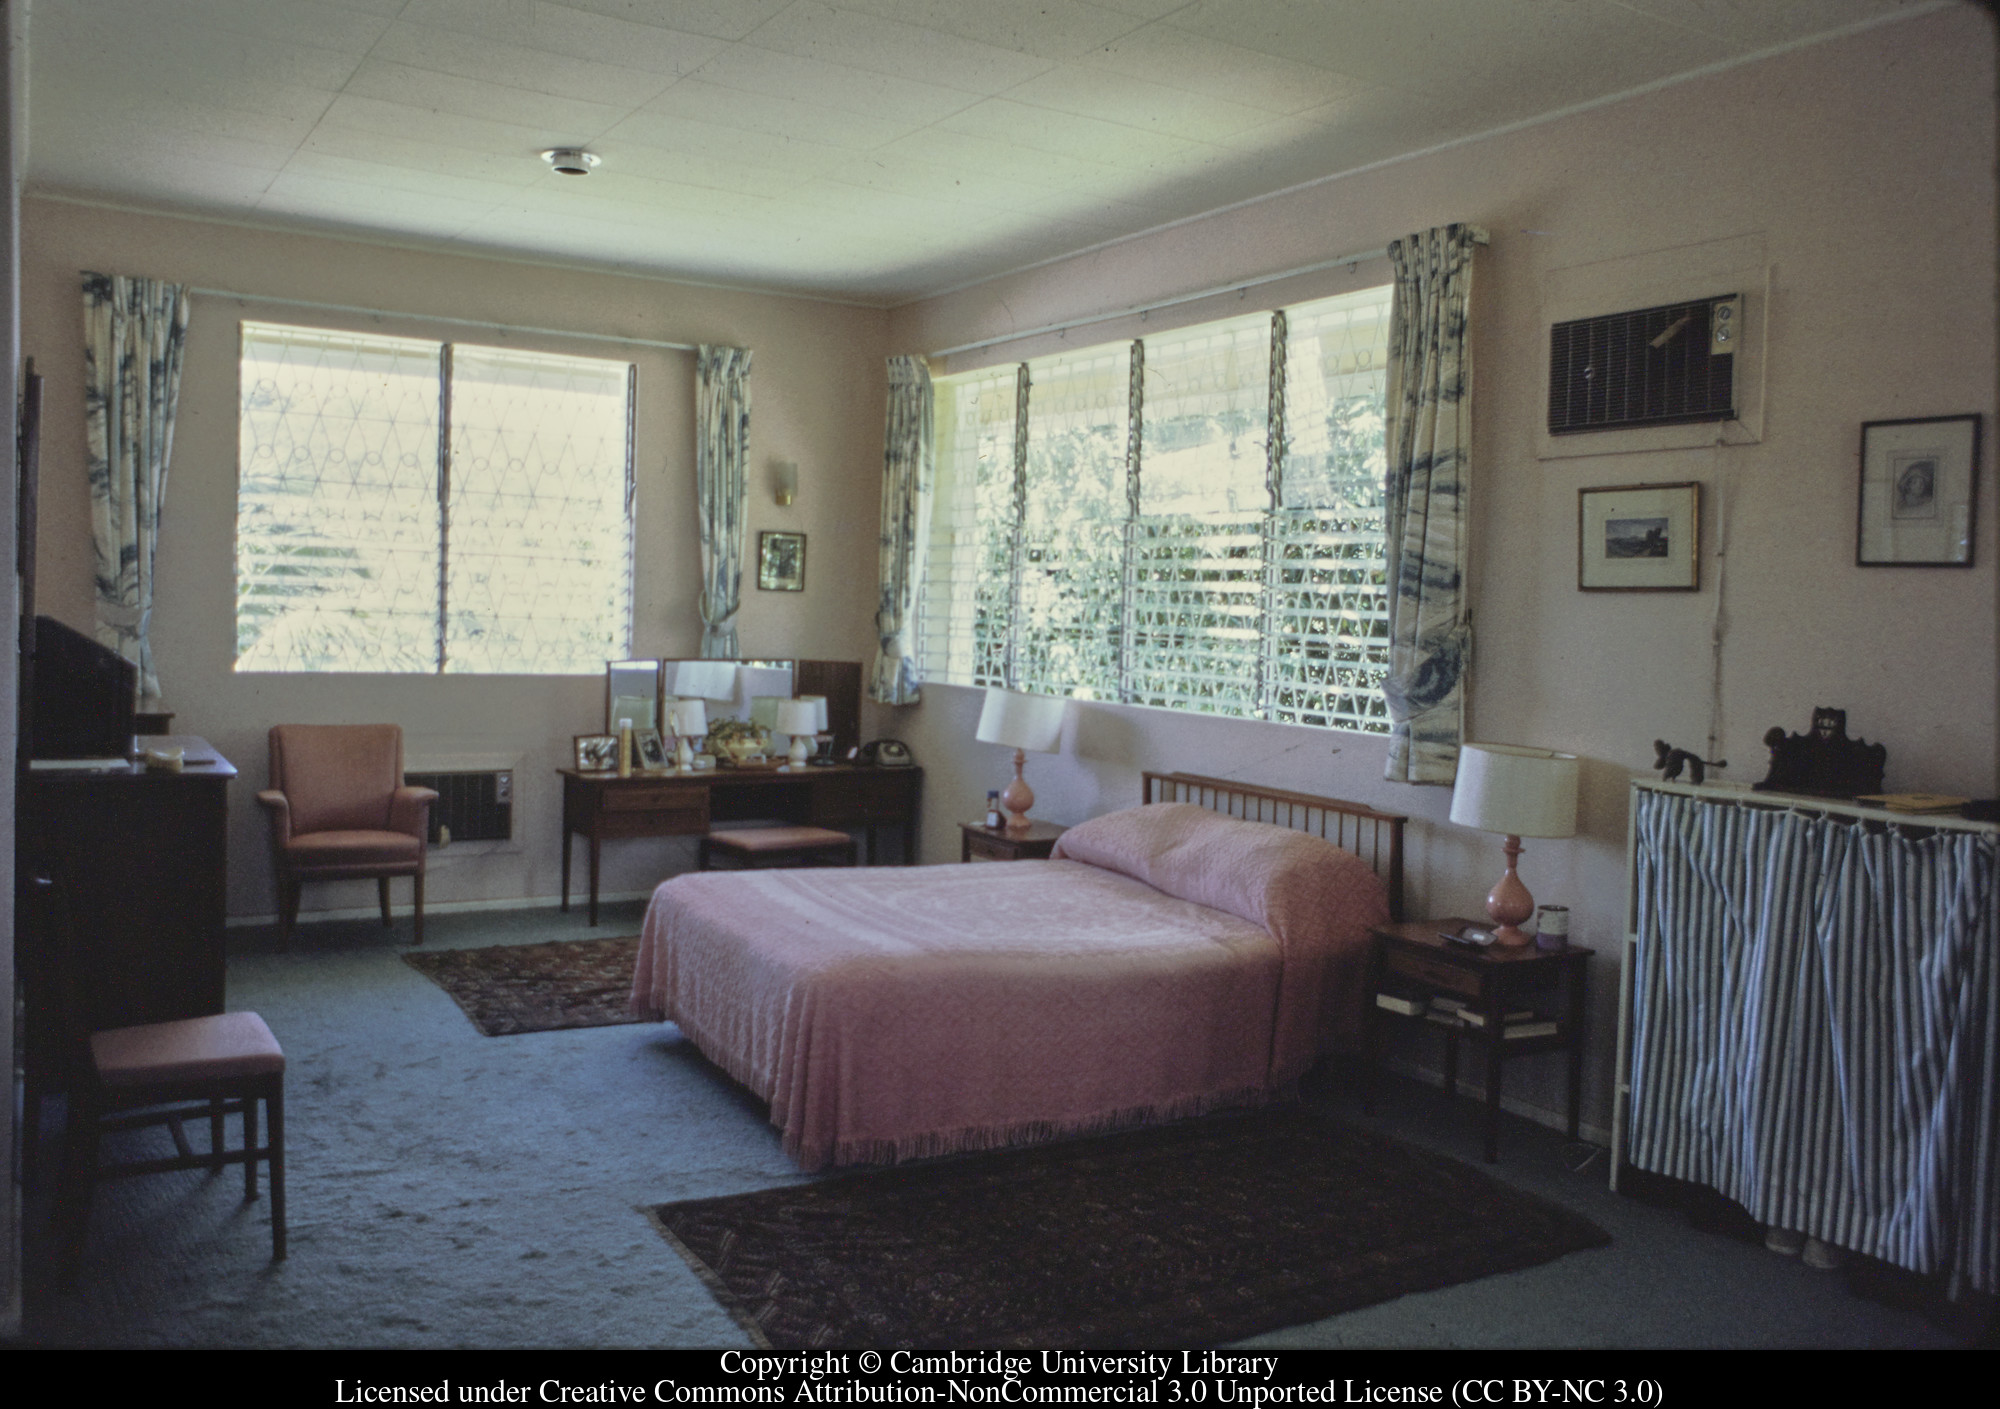 C [Ciceron] : bedroom 1, 1971-06